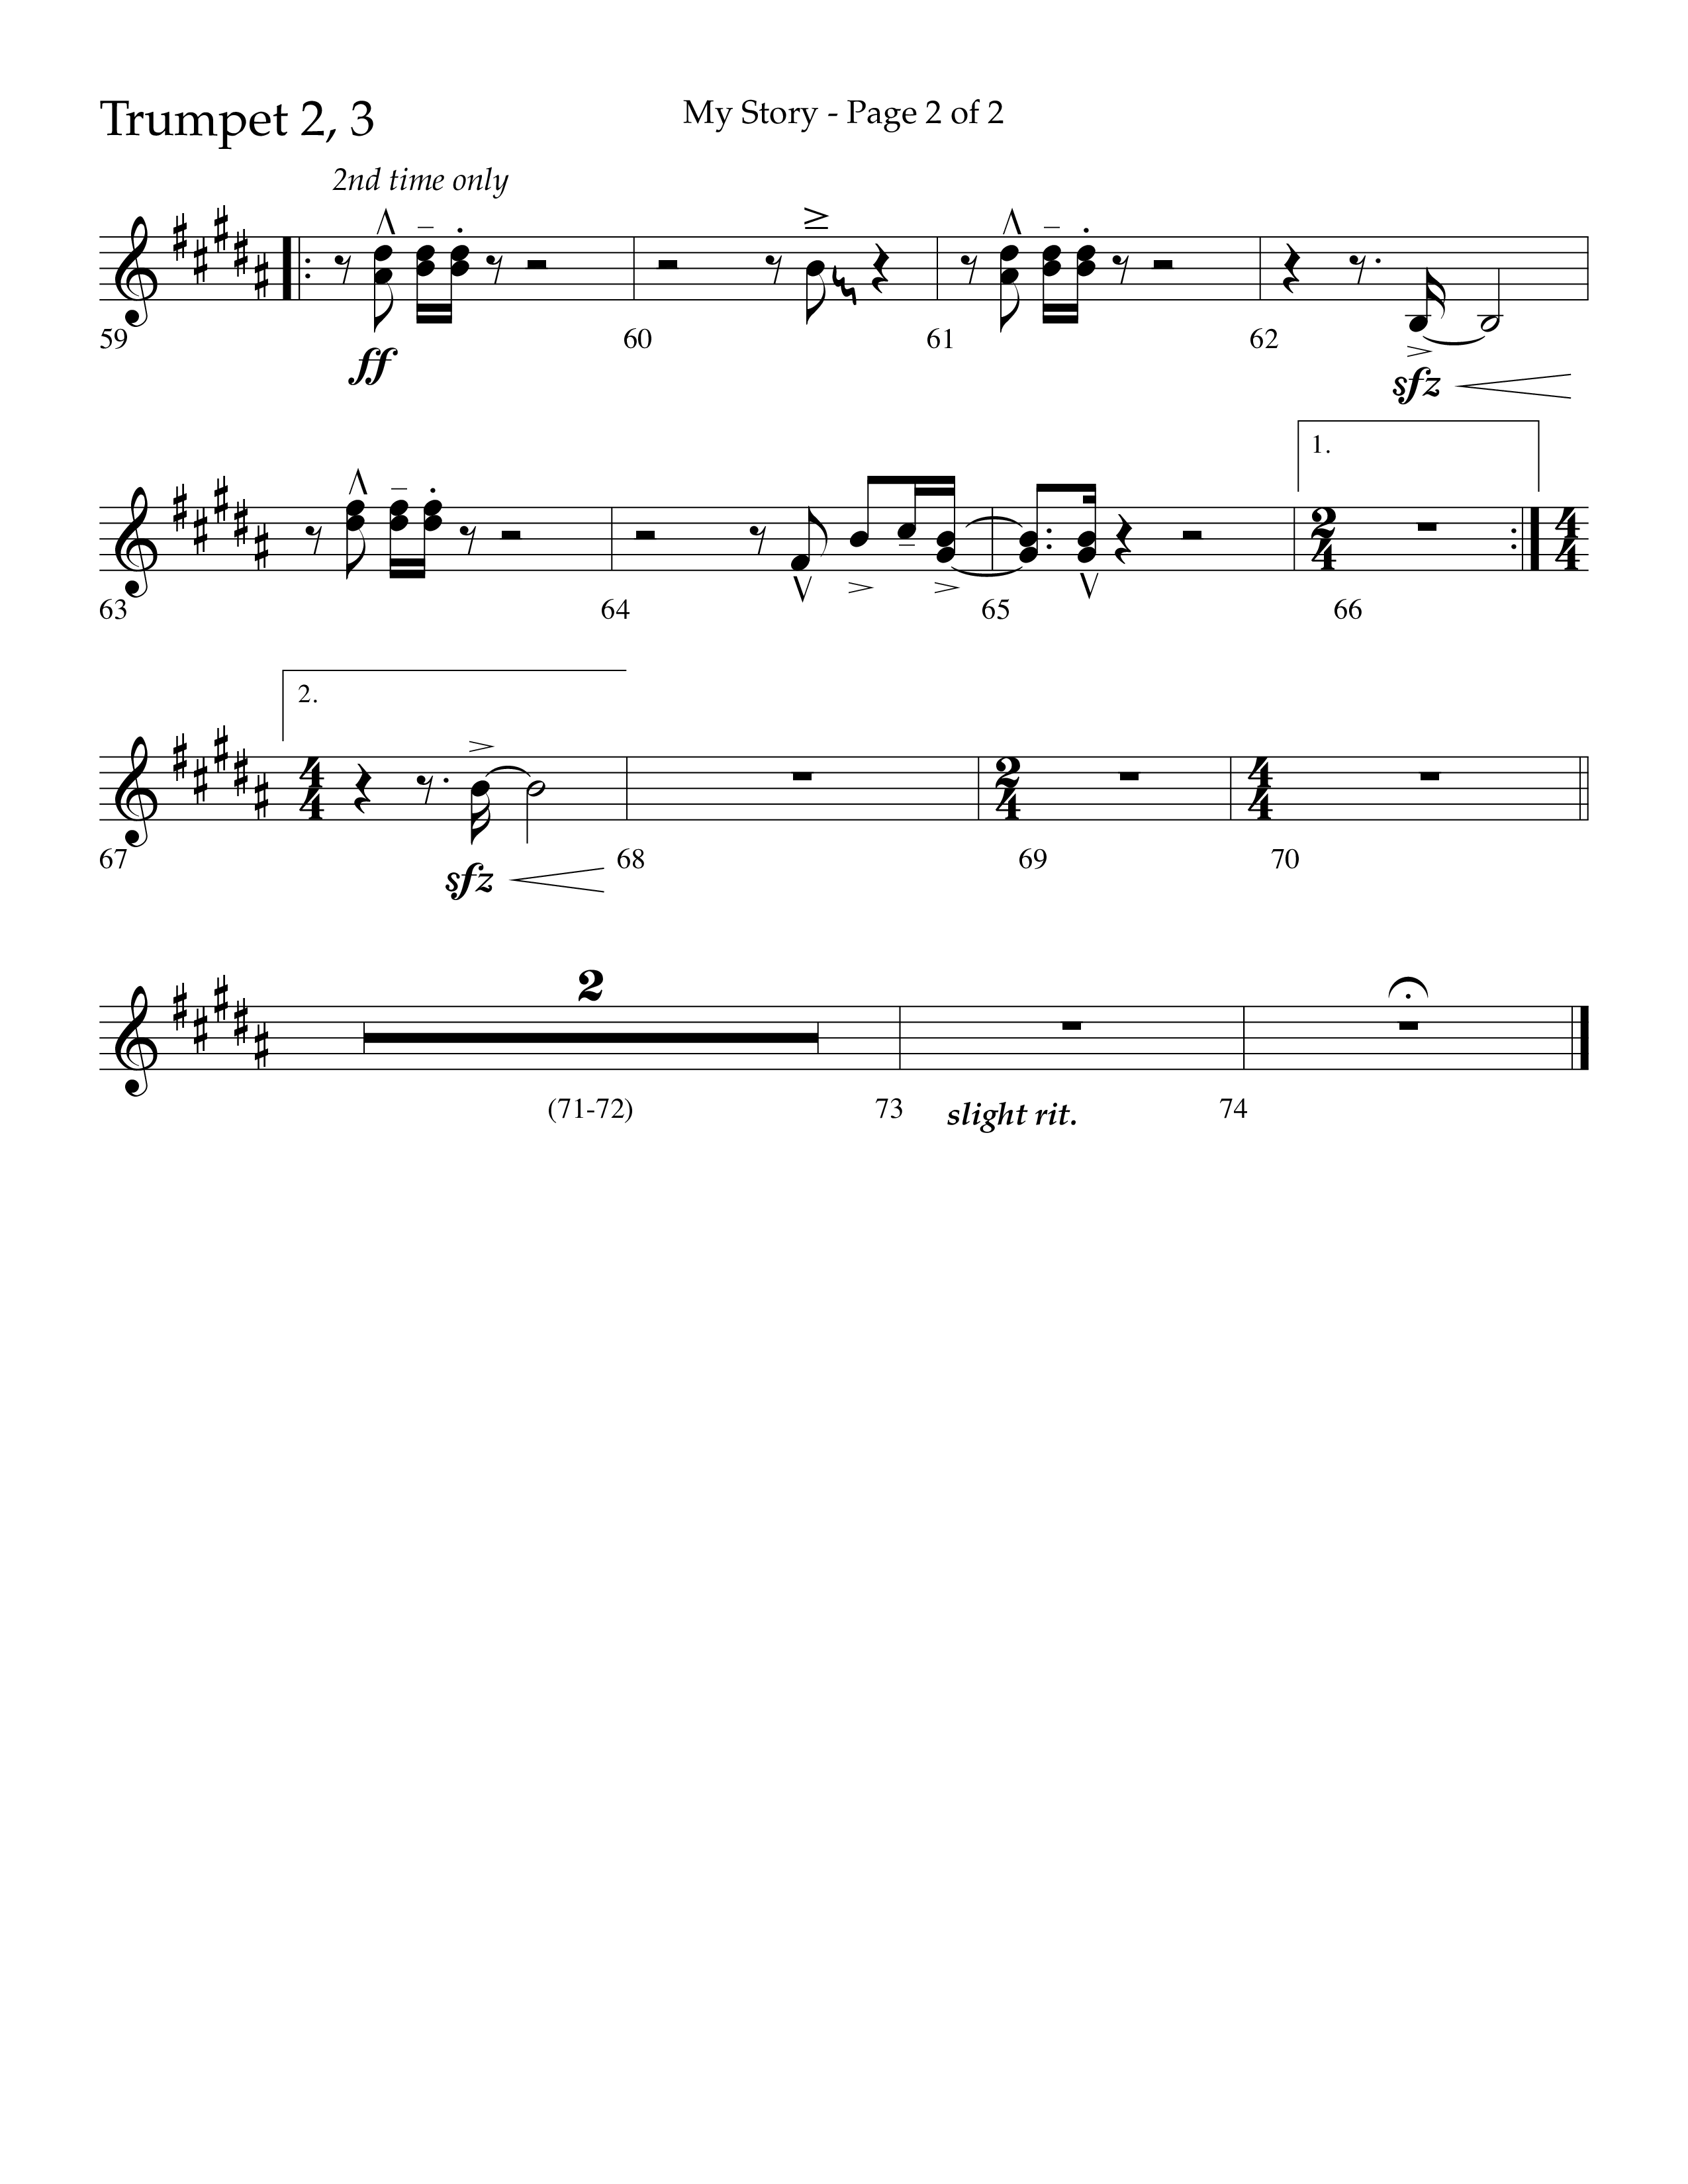 My Story (Choral Anthem SATB) Trumpet 2/3 (Lifeway Choral / Arr. Craig Adams)